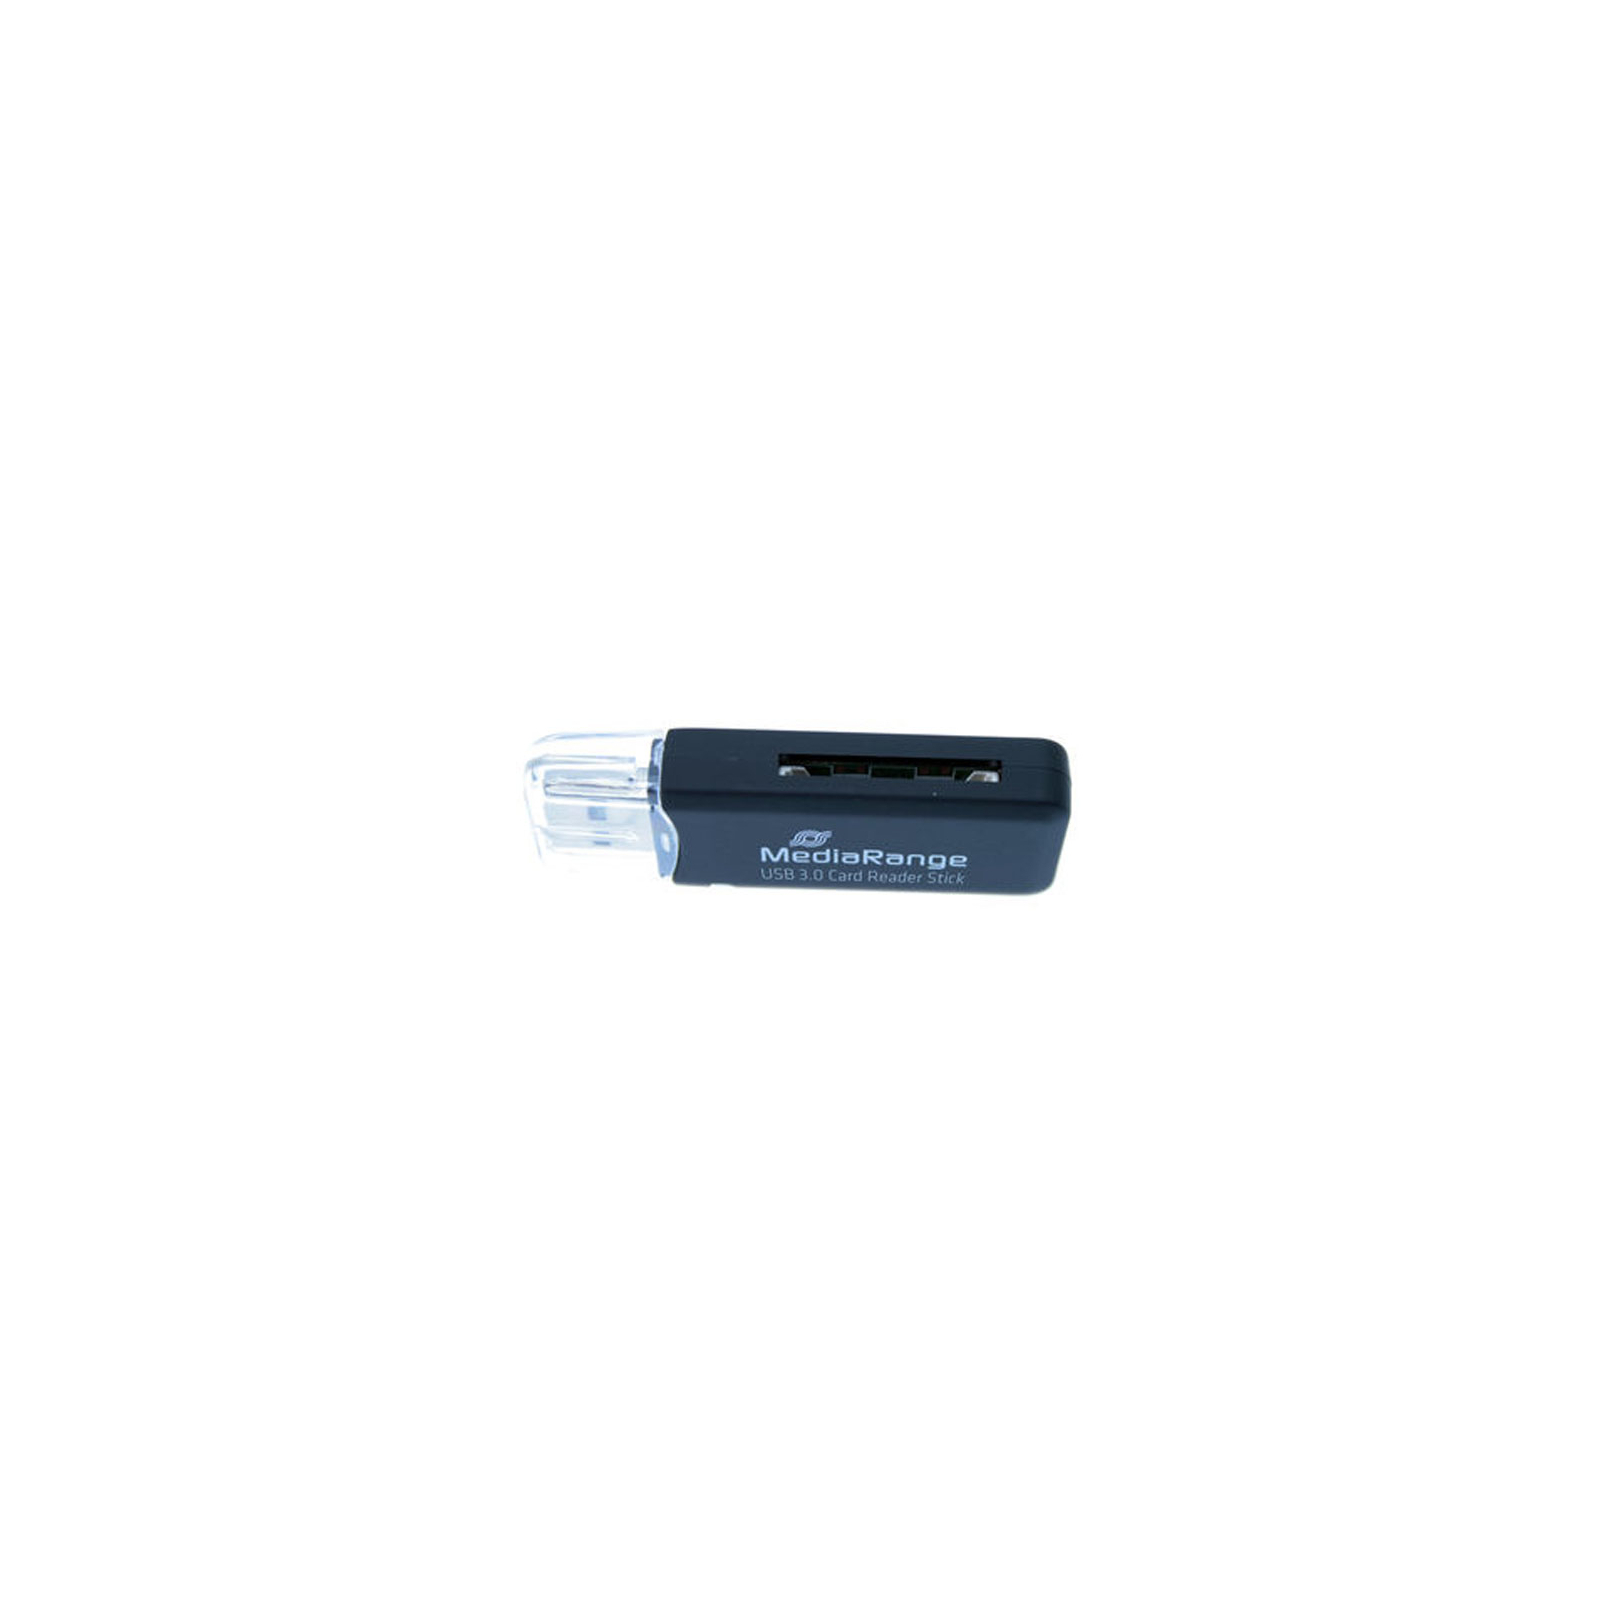 Зчитувач флеш-карт Mediarange USB 3.0 black (MRCS507) зображення 2